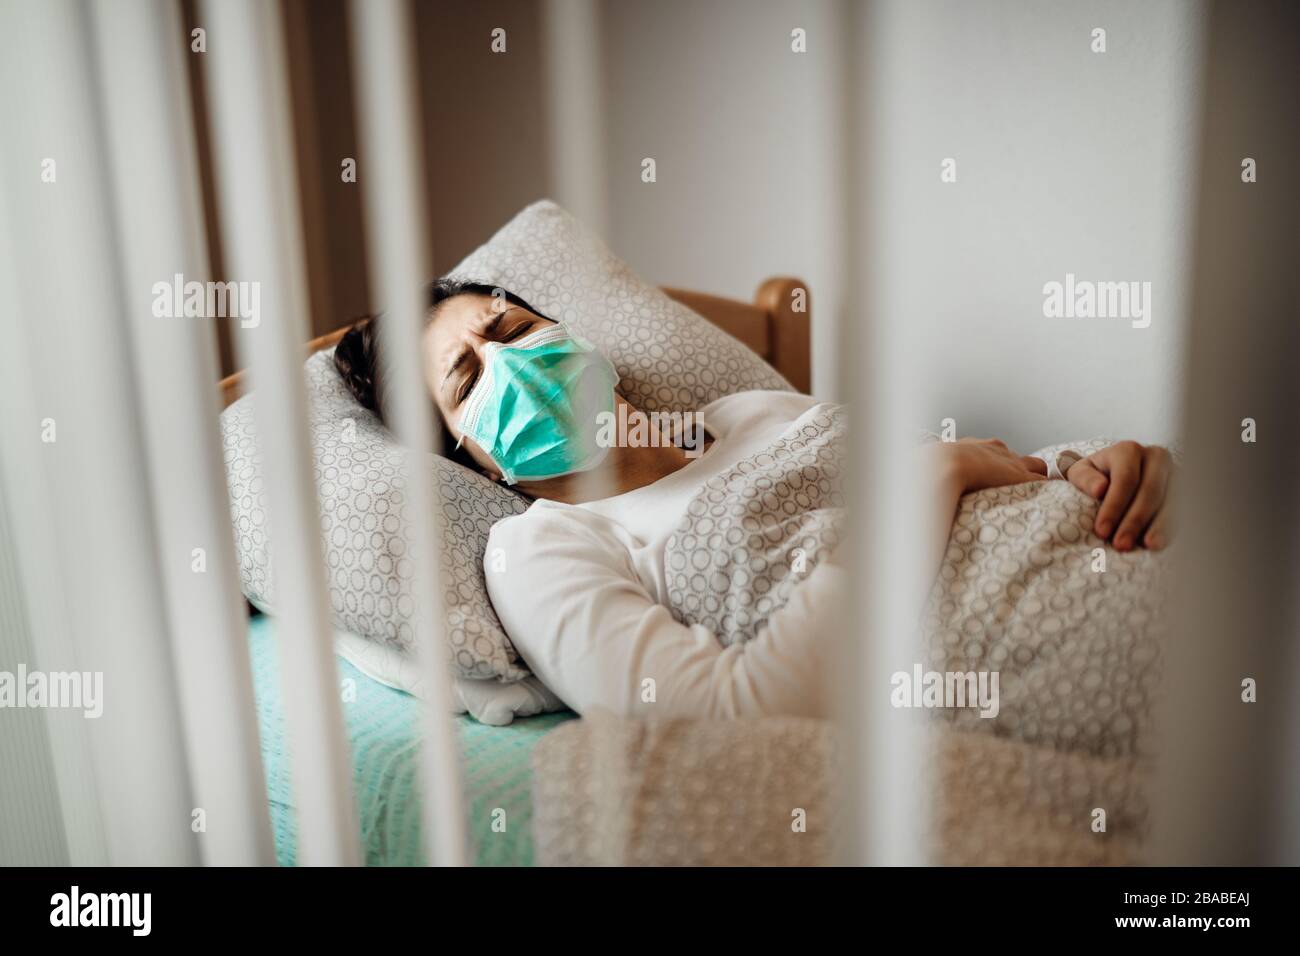 Kranke Frau mit Maske in mobilen Quarantäne-Krankenhauseinheiten Isolation.Coronavirus Covid-19 Patient mit Lungenentzündung Krankheit Symptome Gesundheit Behandlung Männer Stockfoto